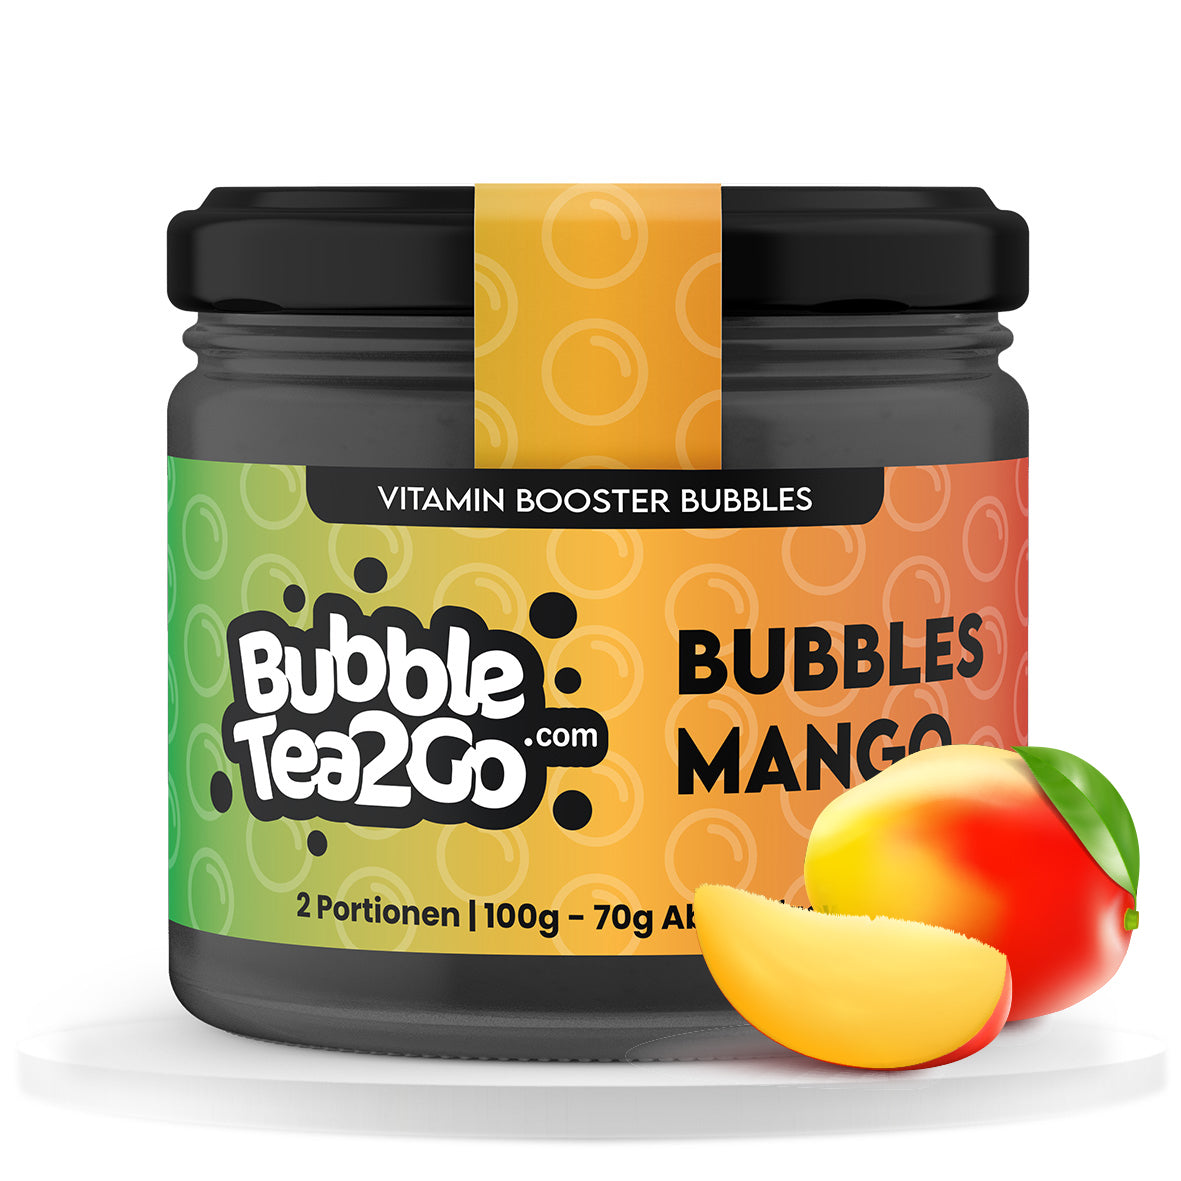 Bubbles - Mango 2 raciones (120g)